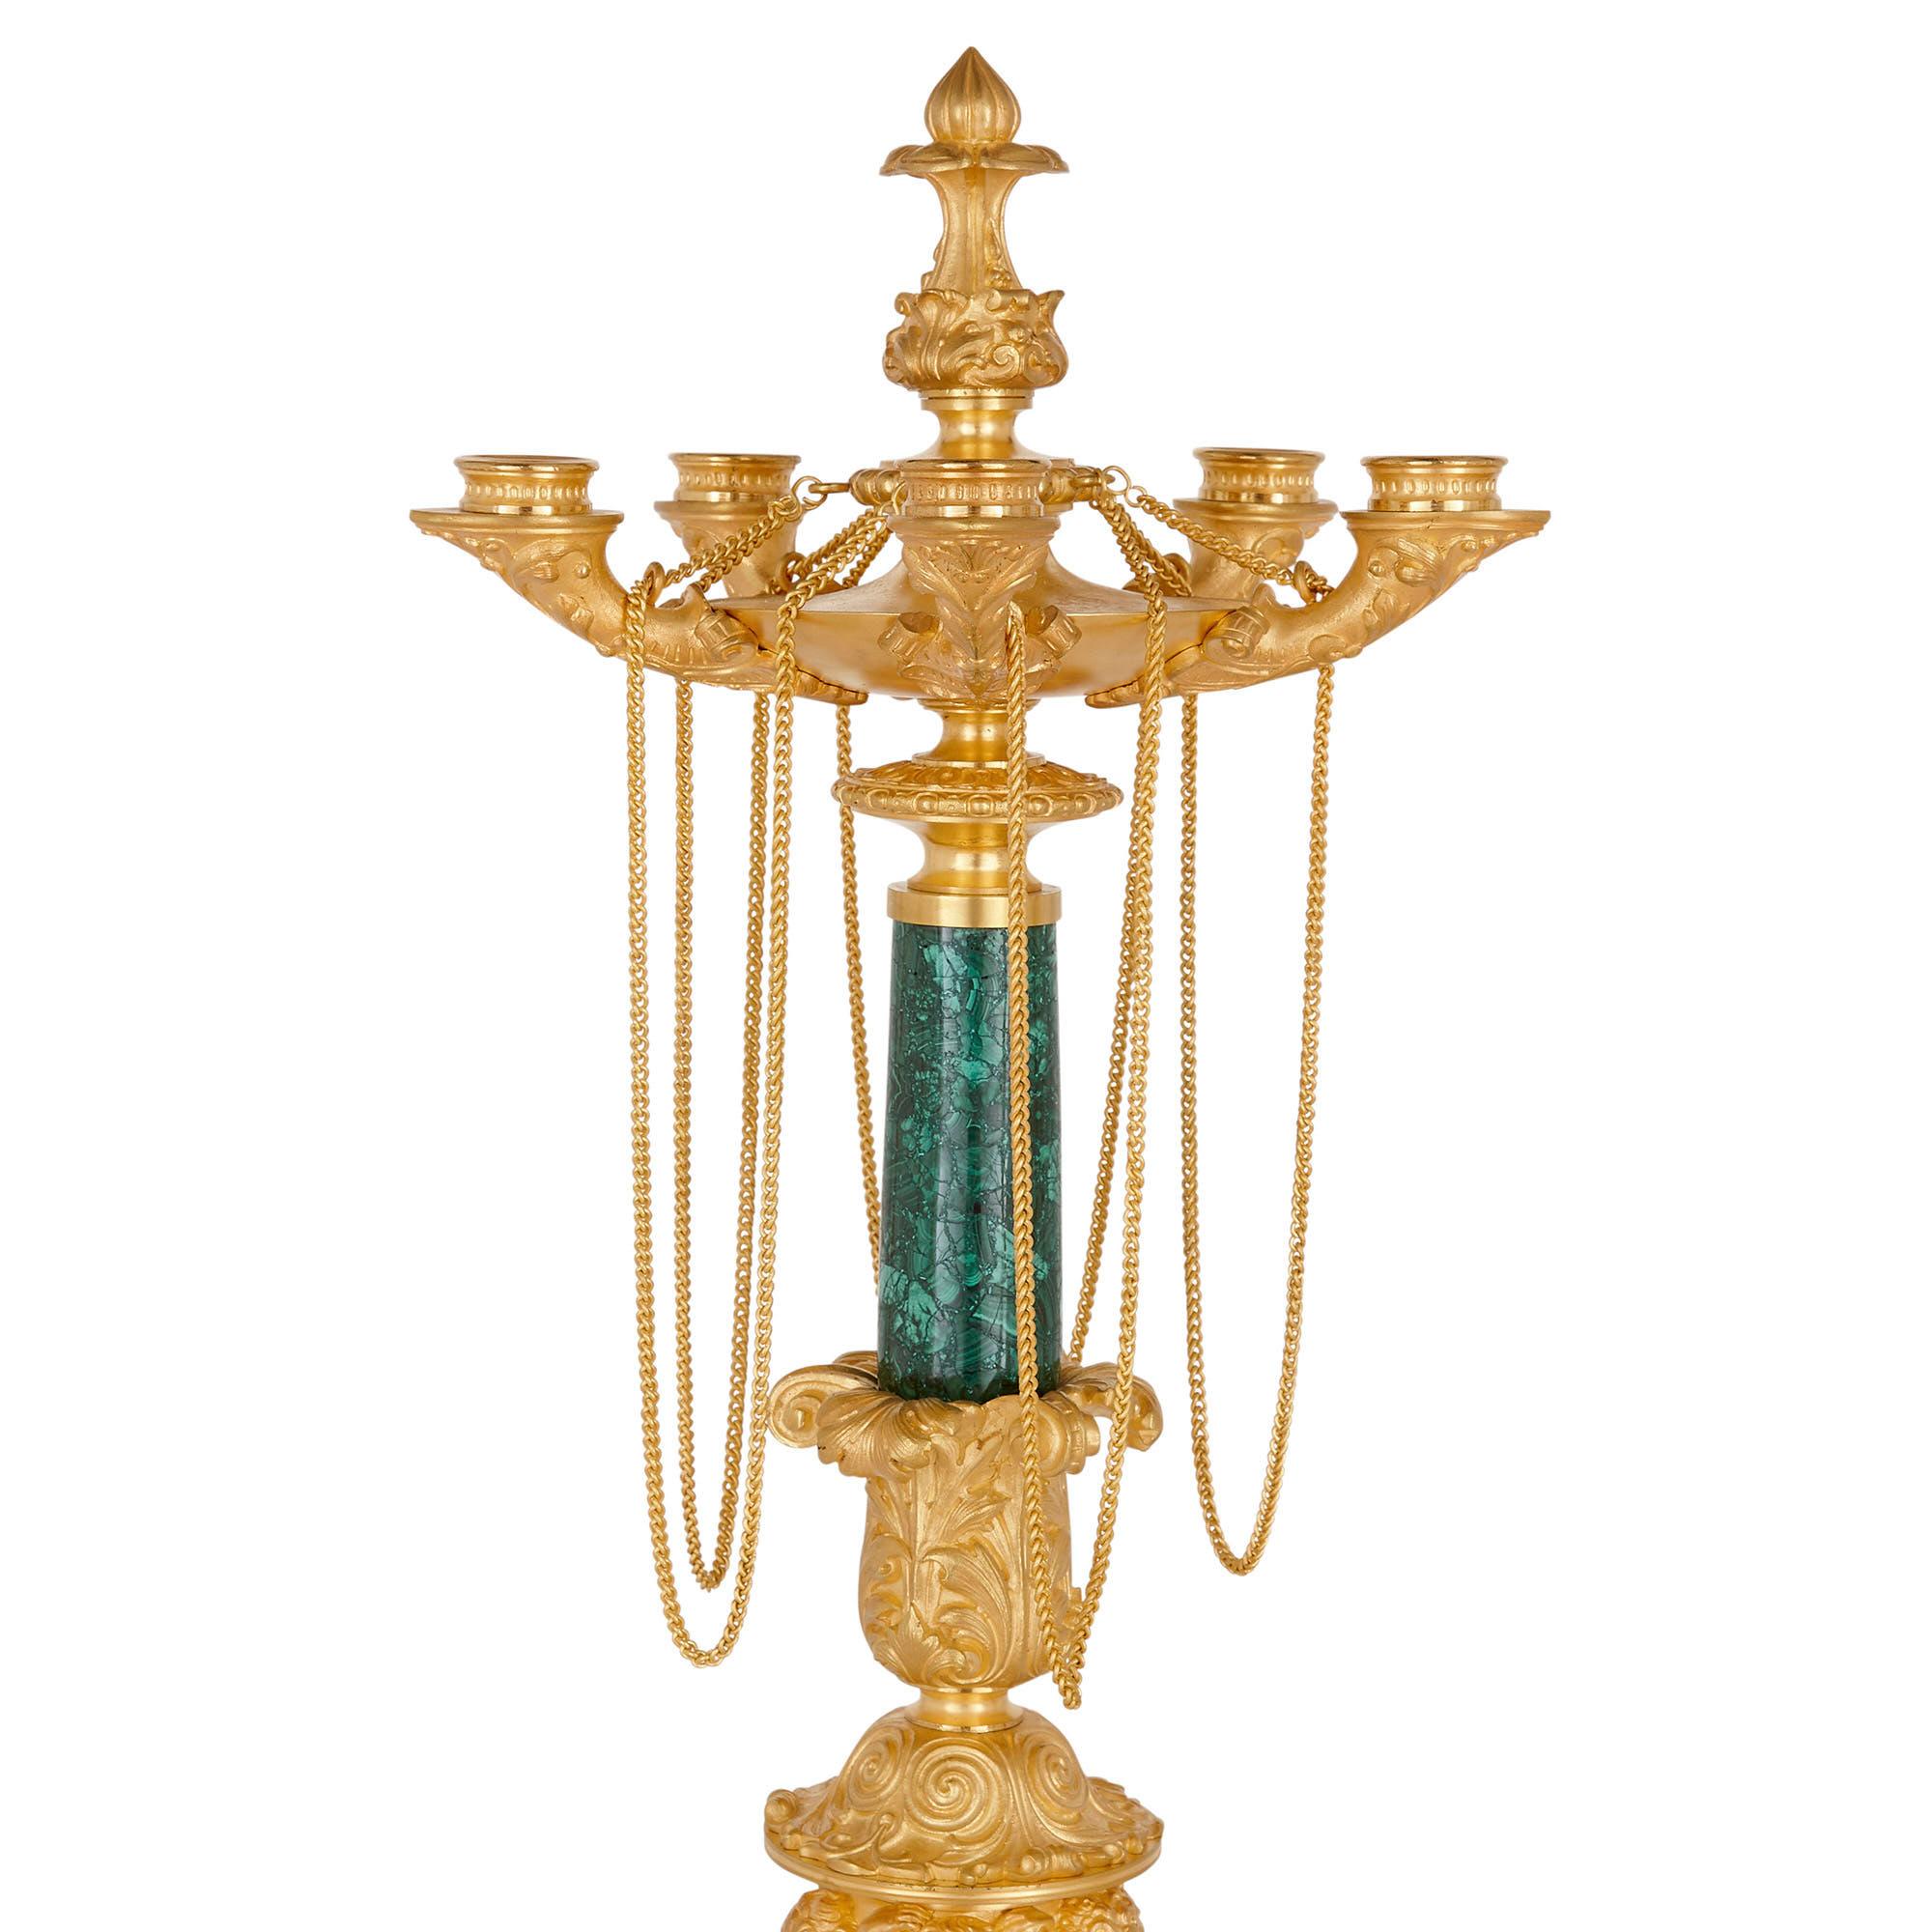 Deux candélabres néoclassiques du début du XIXe siècle en malachite et bronze doré
Français, vers 1830
Dimensions : Hauteur 68cm, diamètre 25cm

Cette superbe paire de candélabres d'époque Charles X est conçue dans un style néoclassique